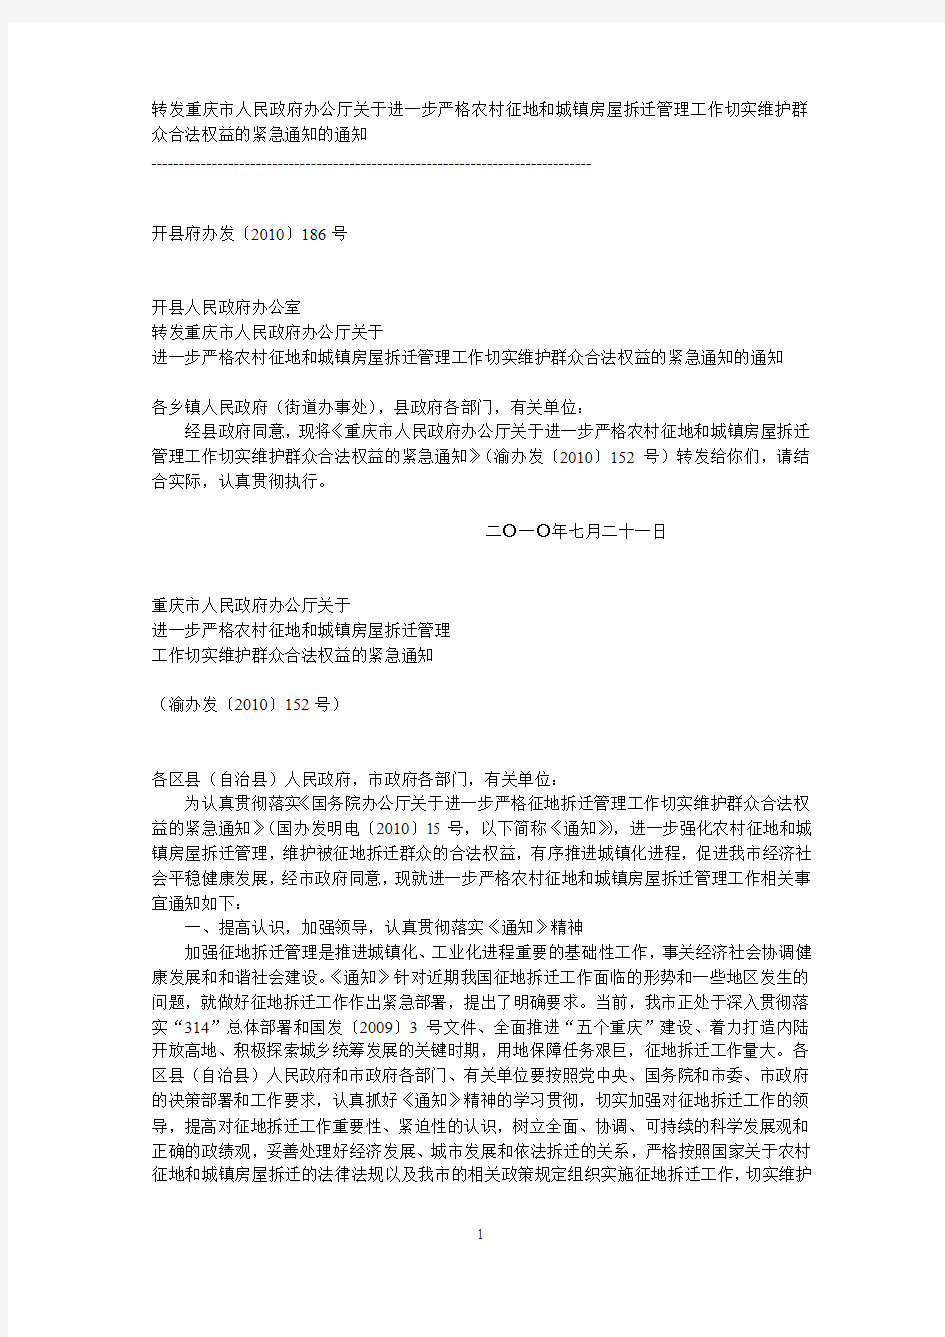 重庆市人民政府办公厅关于进一步严格农村征地和城镇房屋拆迁管理工作切实维护群众合法权益的紧急通知的